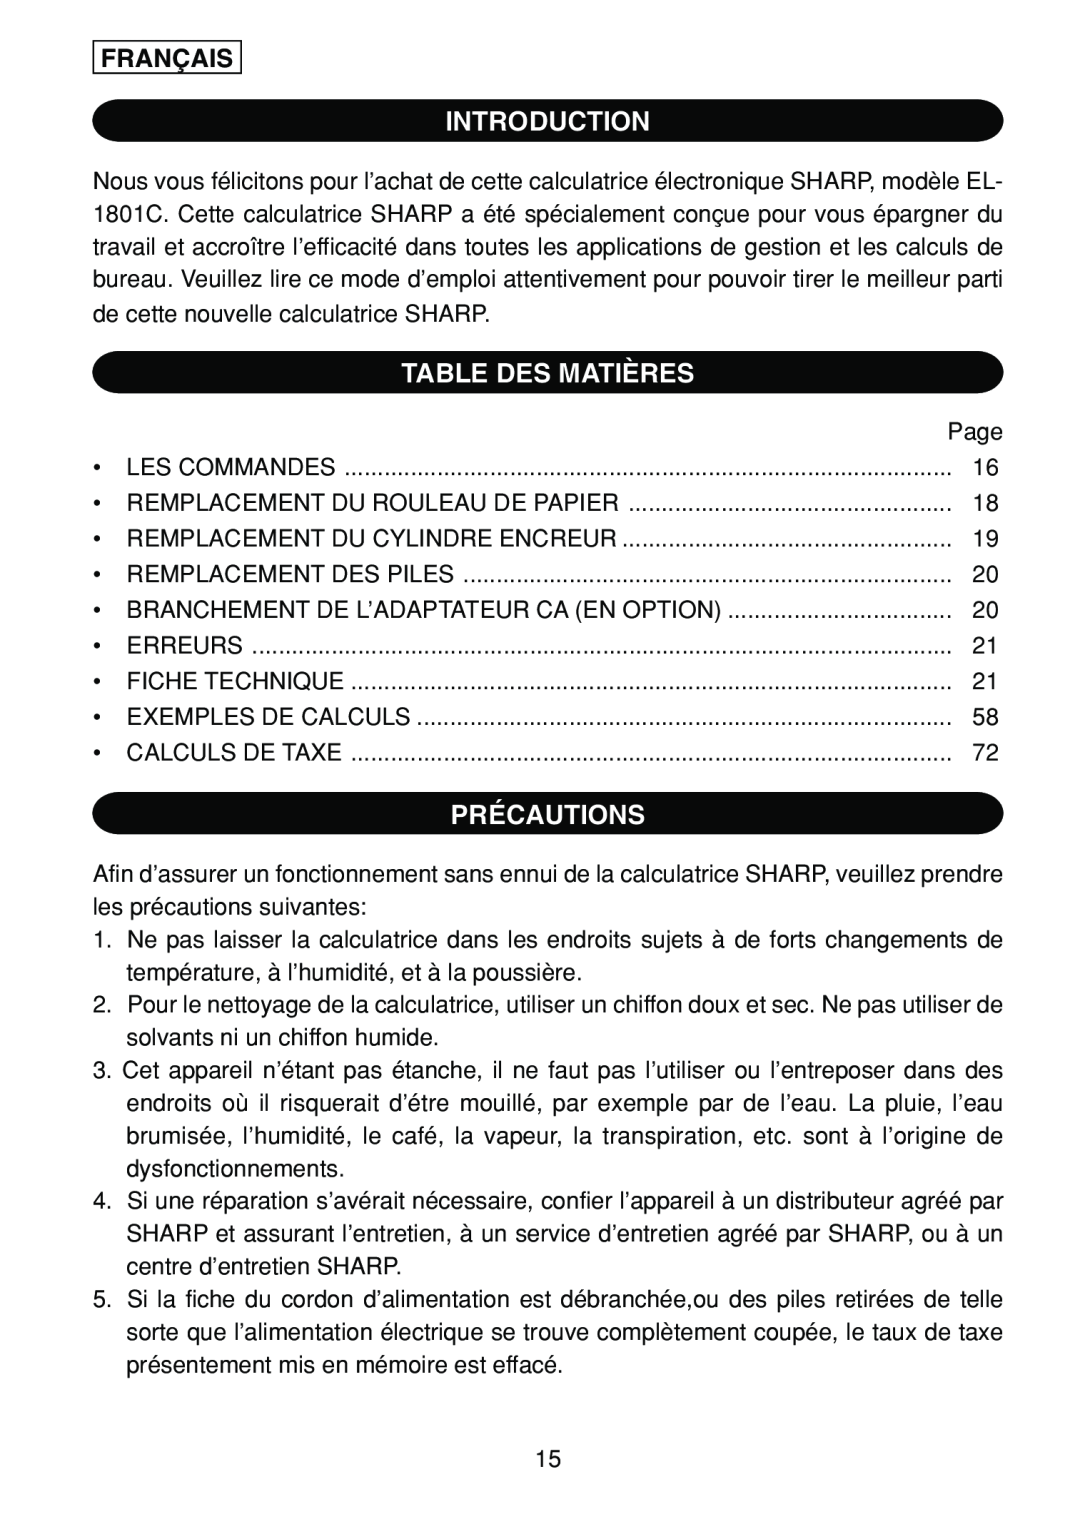 Sharp EL-1801C operation manual Introduction, Table Des Matières, Précautions, Français, Calculs De Taxe 